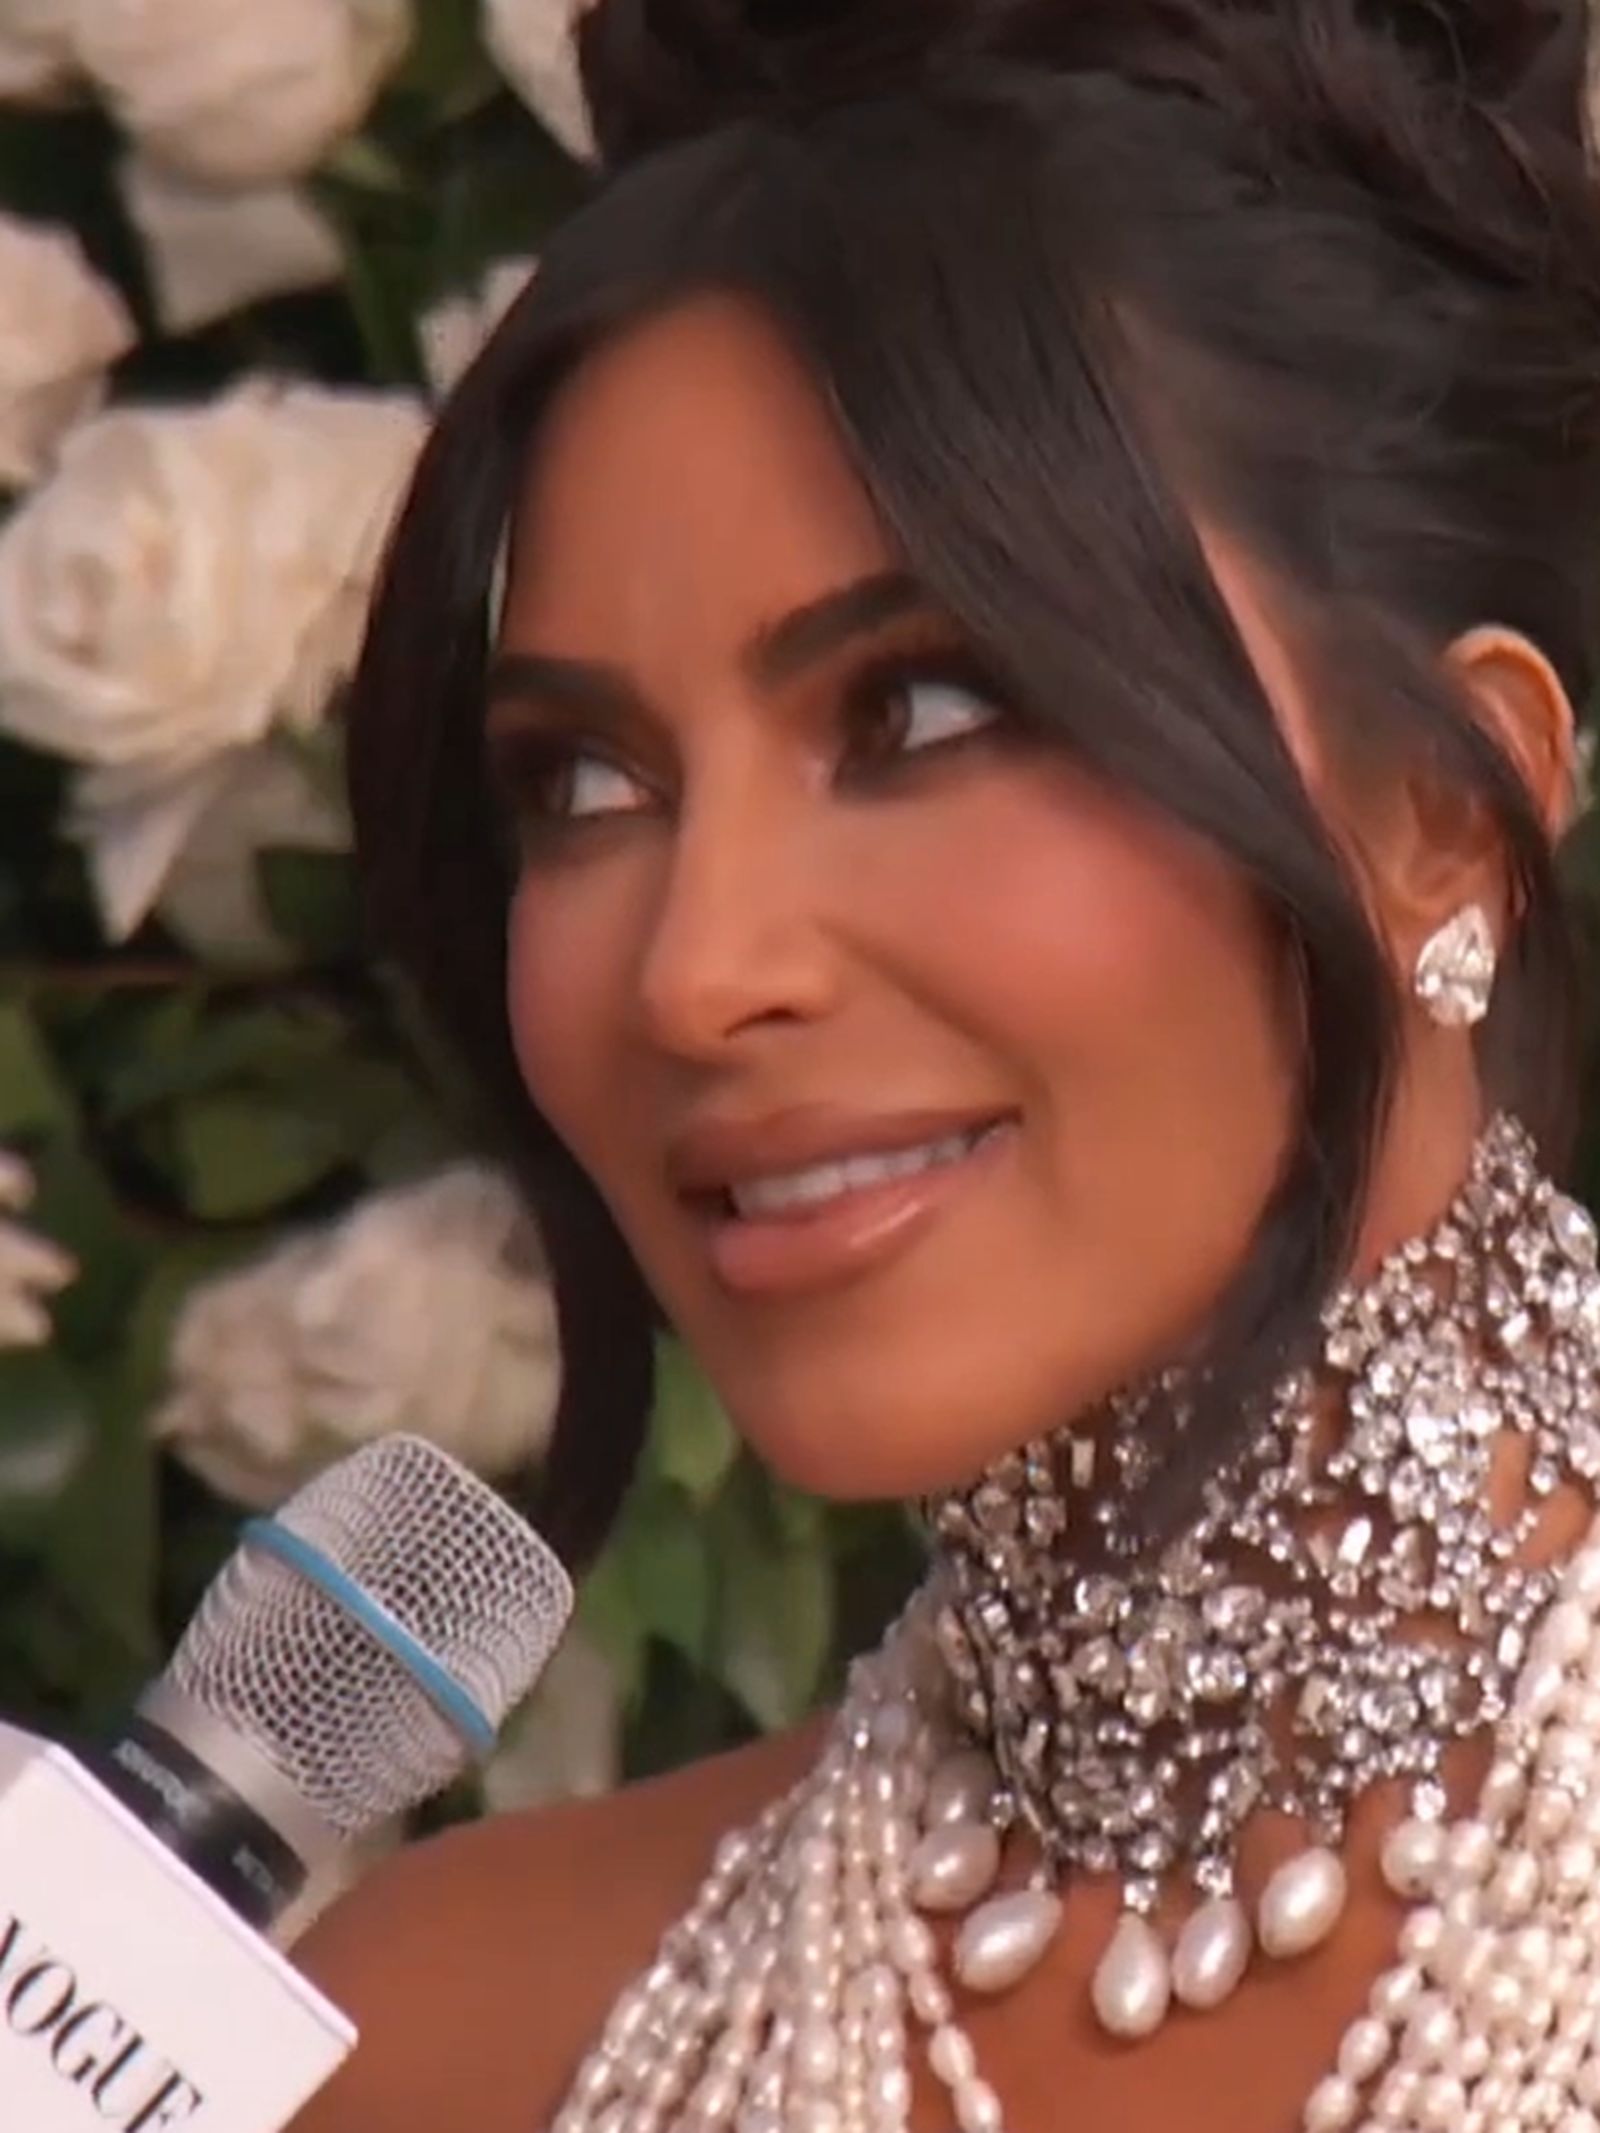 Kim Kardashian on Her Pearly Met Gala Look